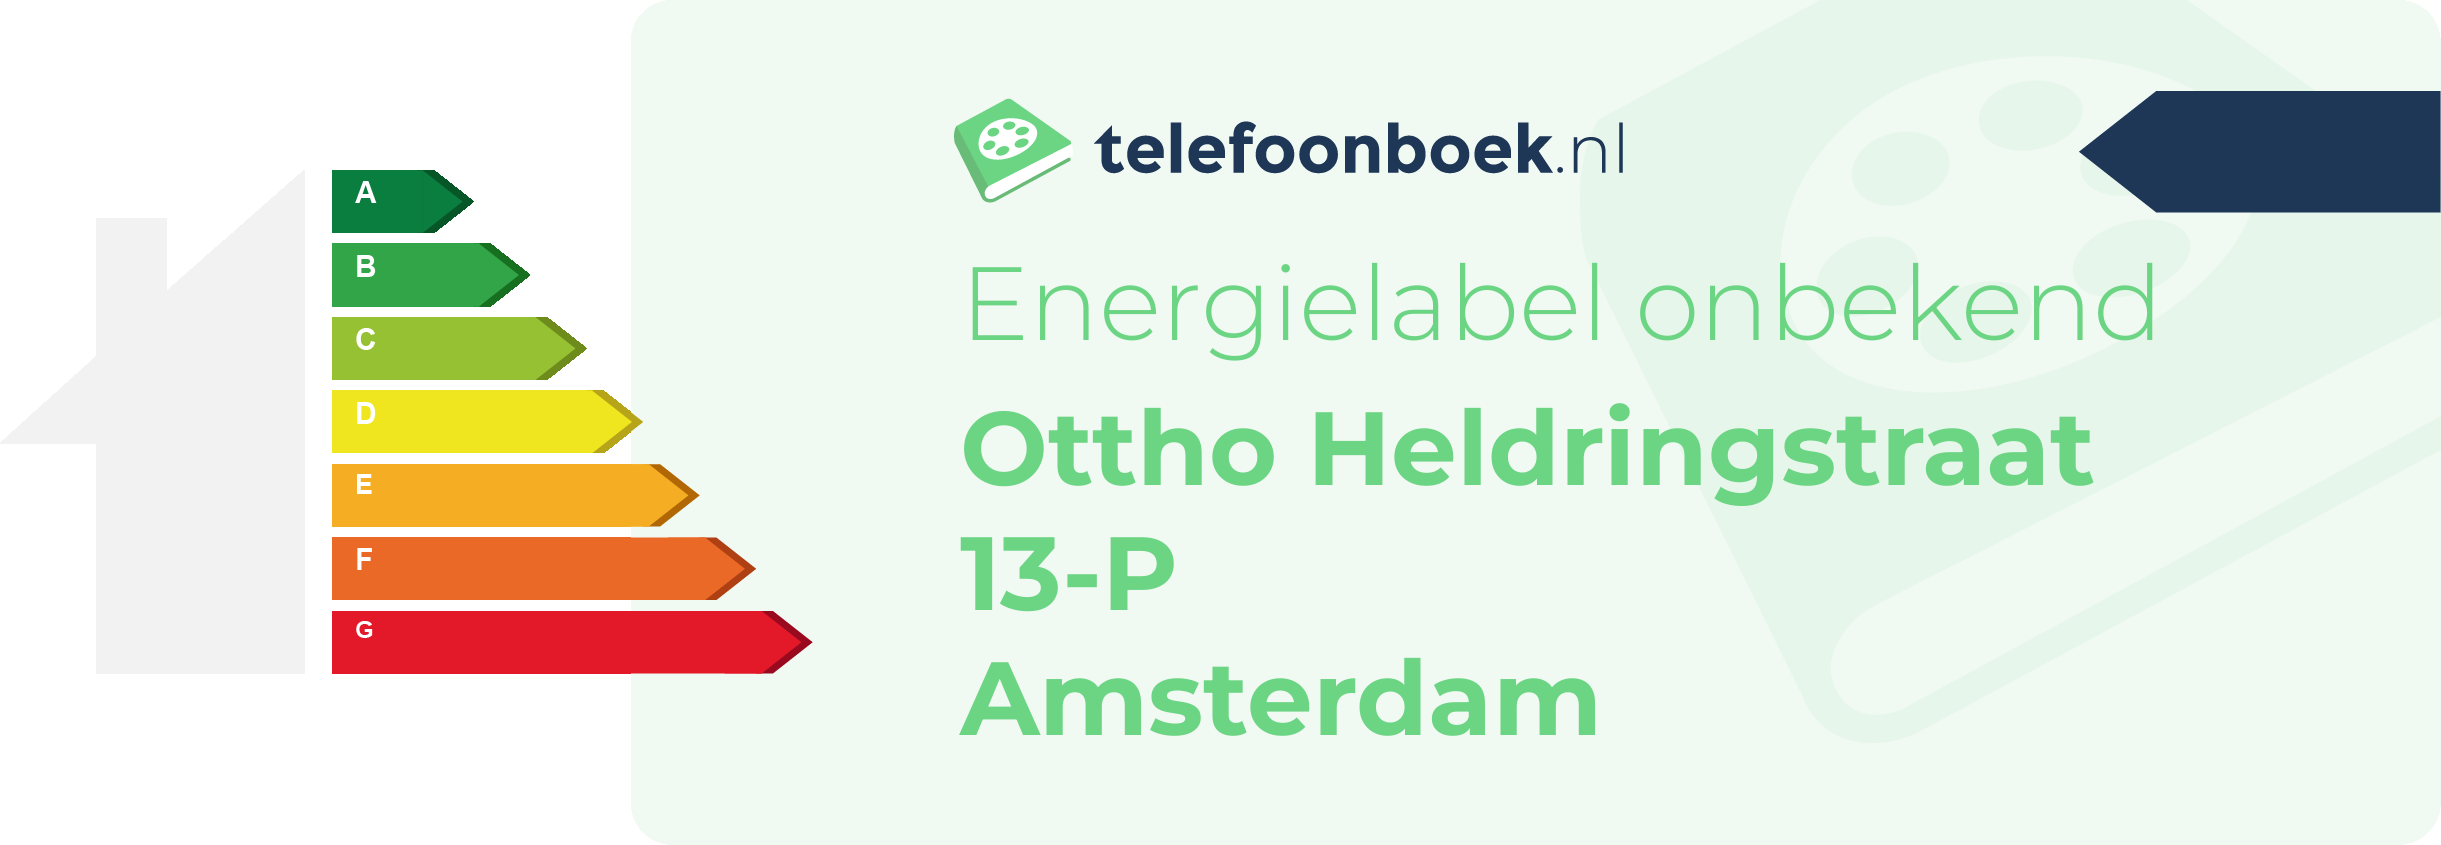 Energielabel Ottho Heldringstraat 13-P Amsterdam